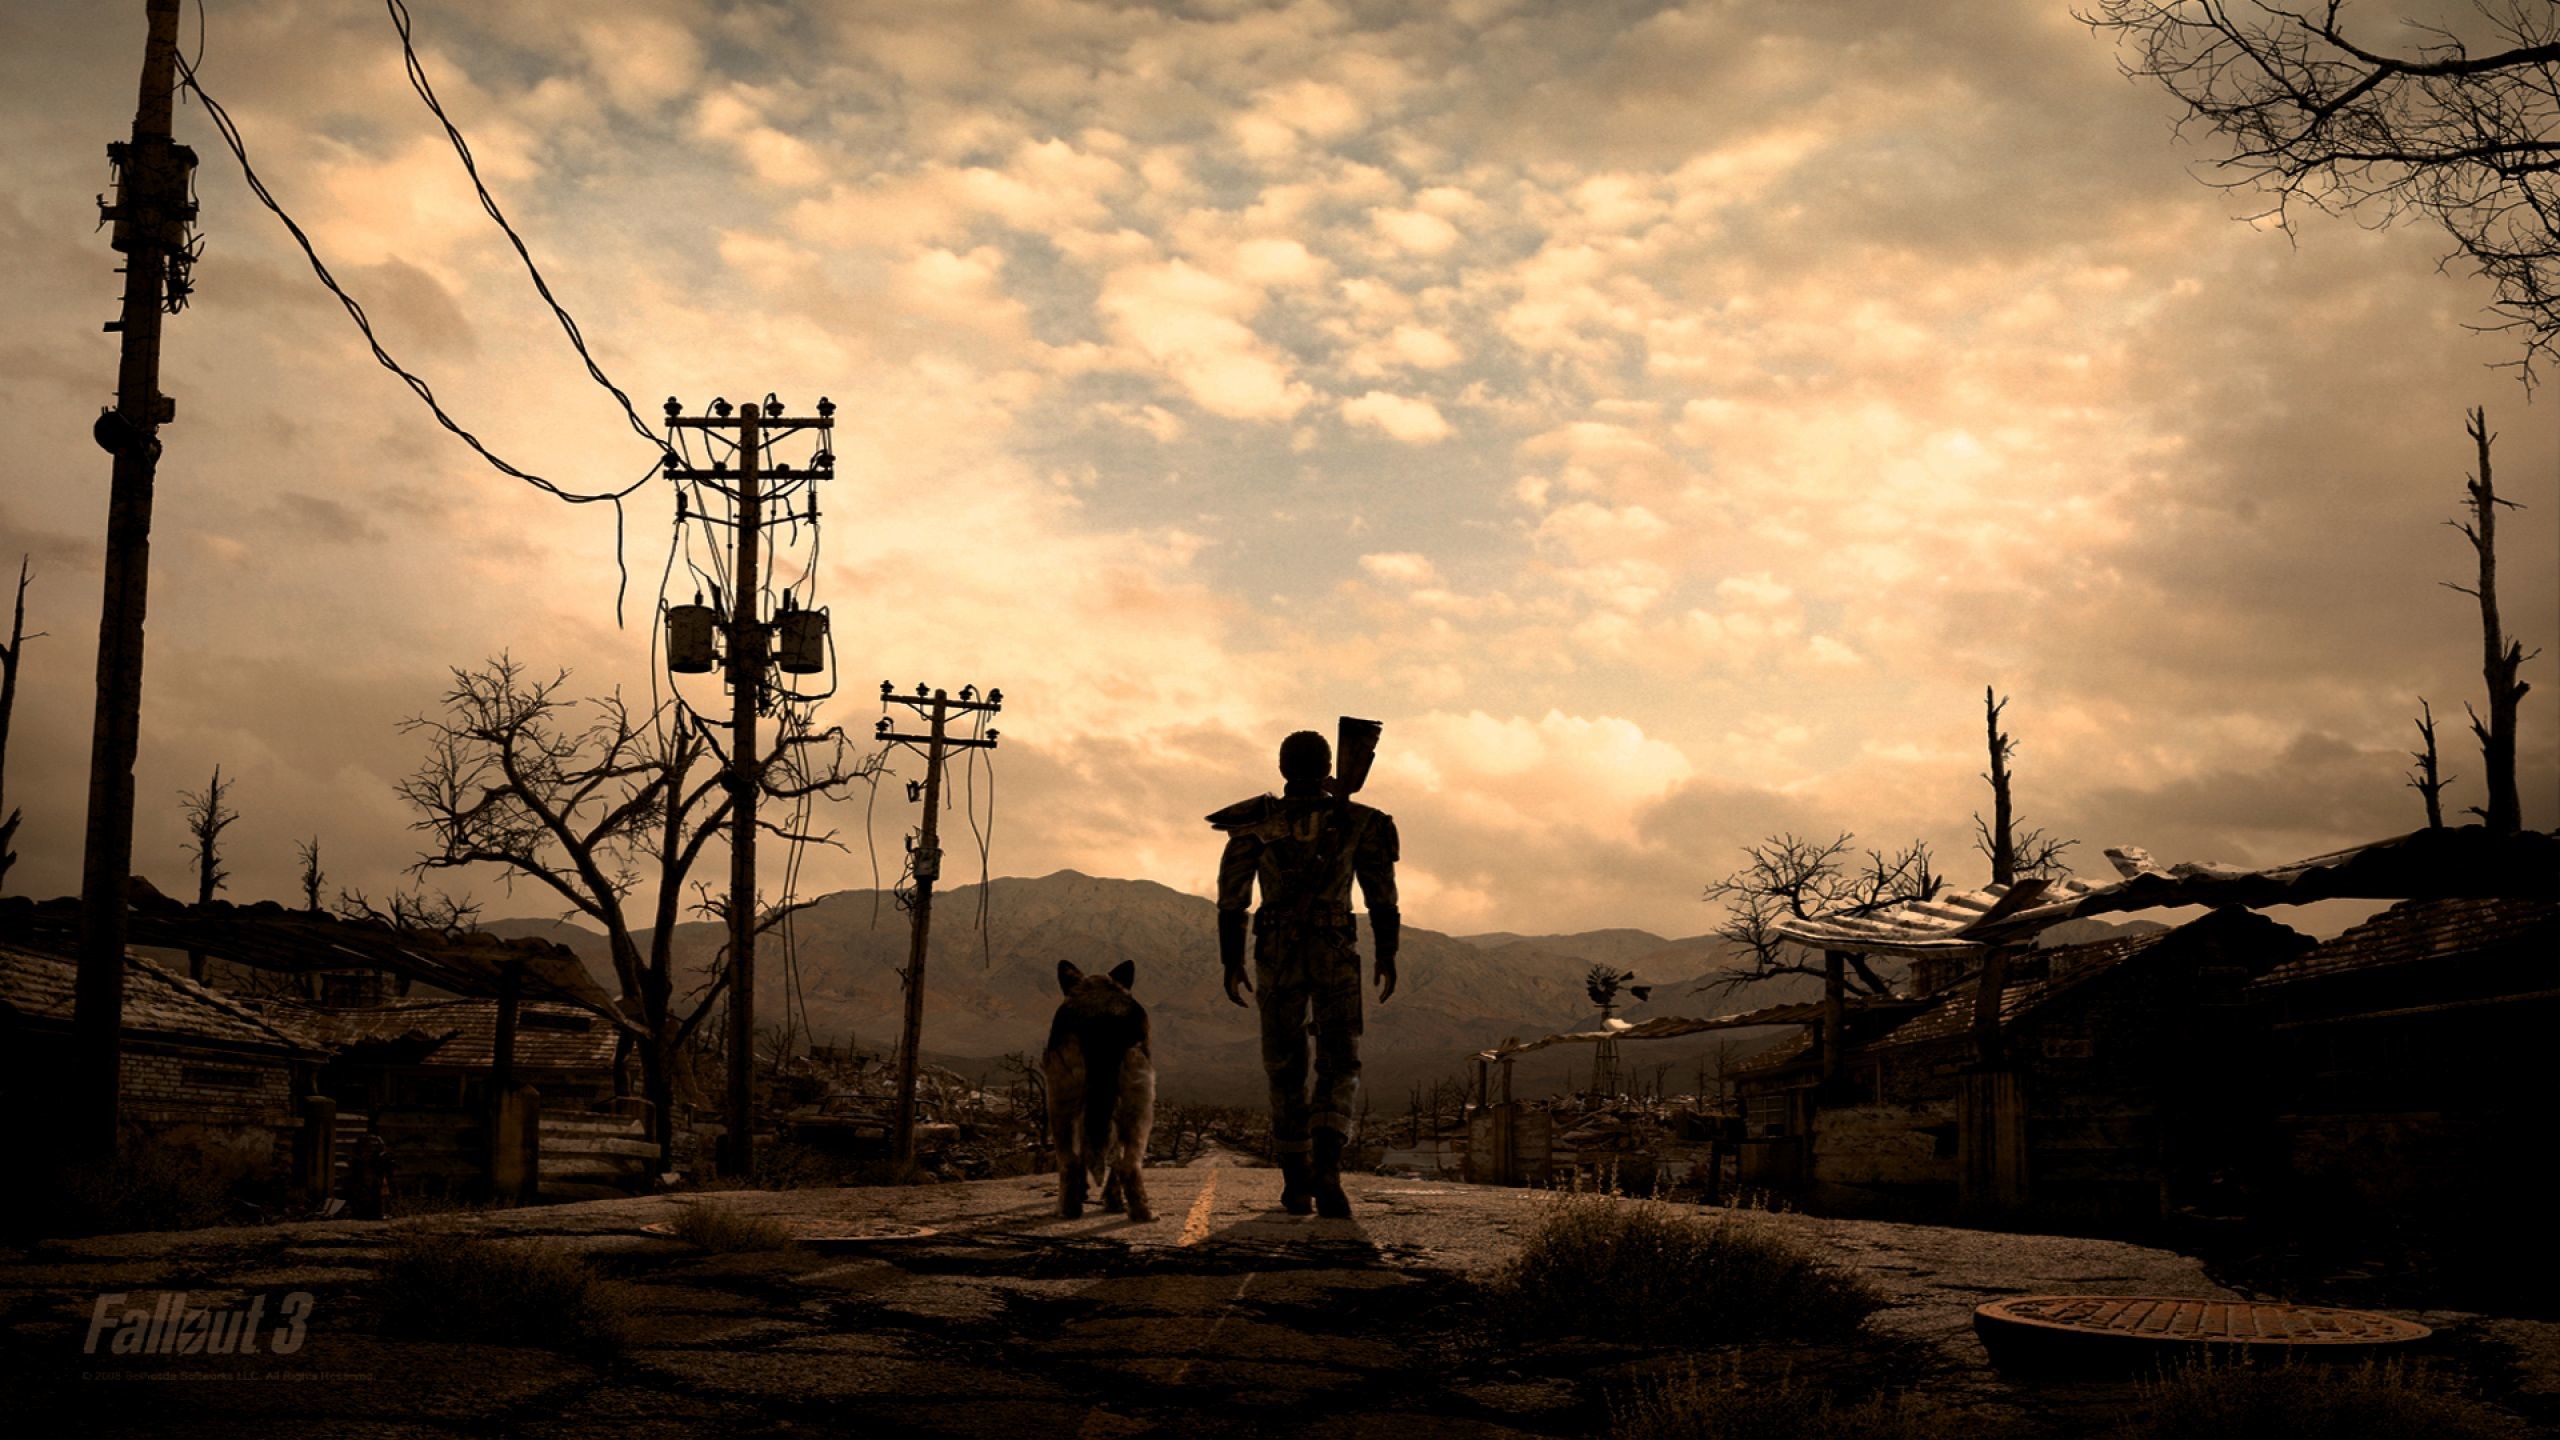 2560x1440 Fallout 3 wallpaper